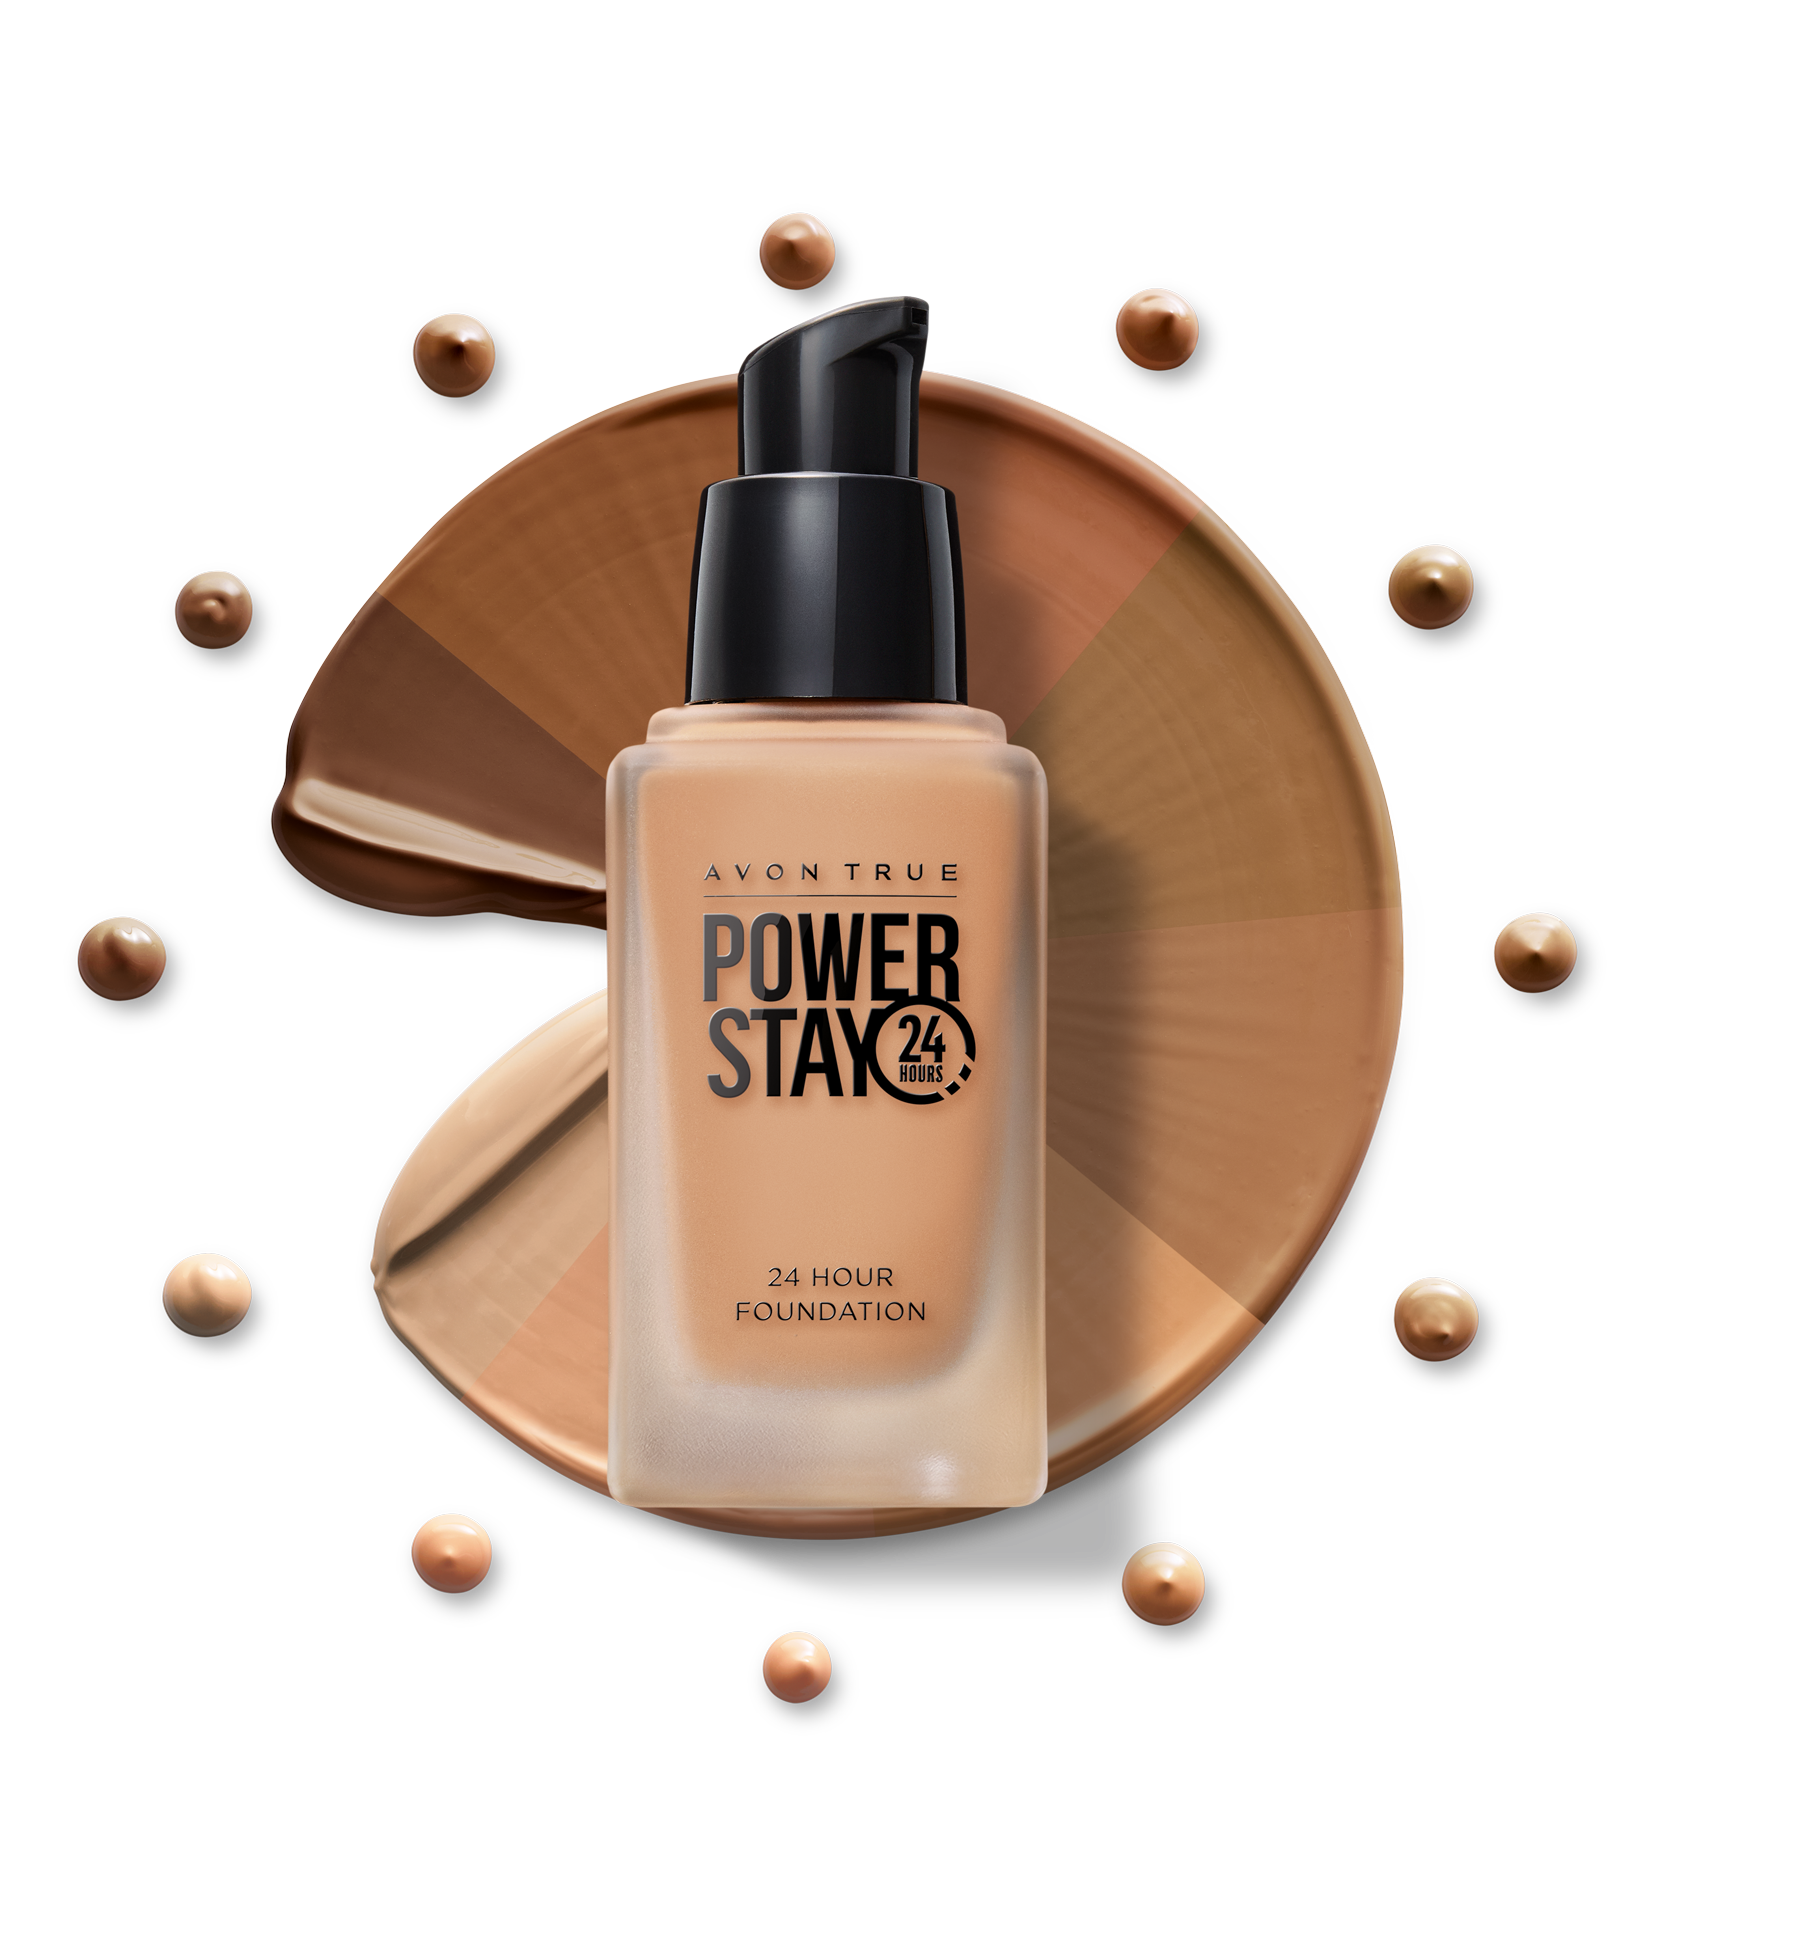 Power Stay tečni puder 799 din 1 Makeup kolekcija otporna na sve – od svitanja do sumraka